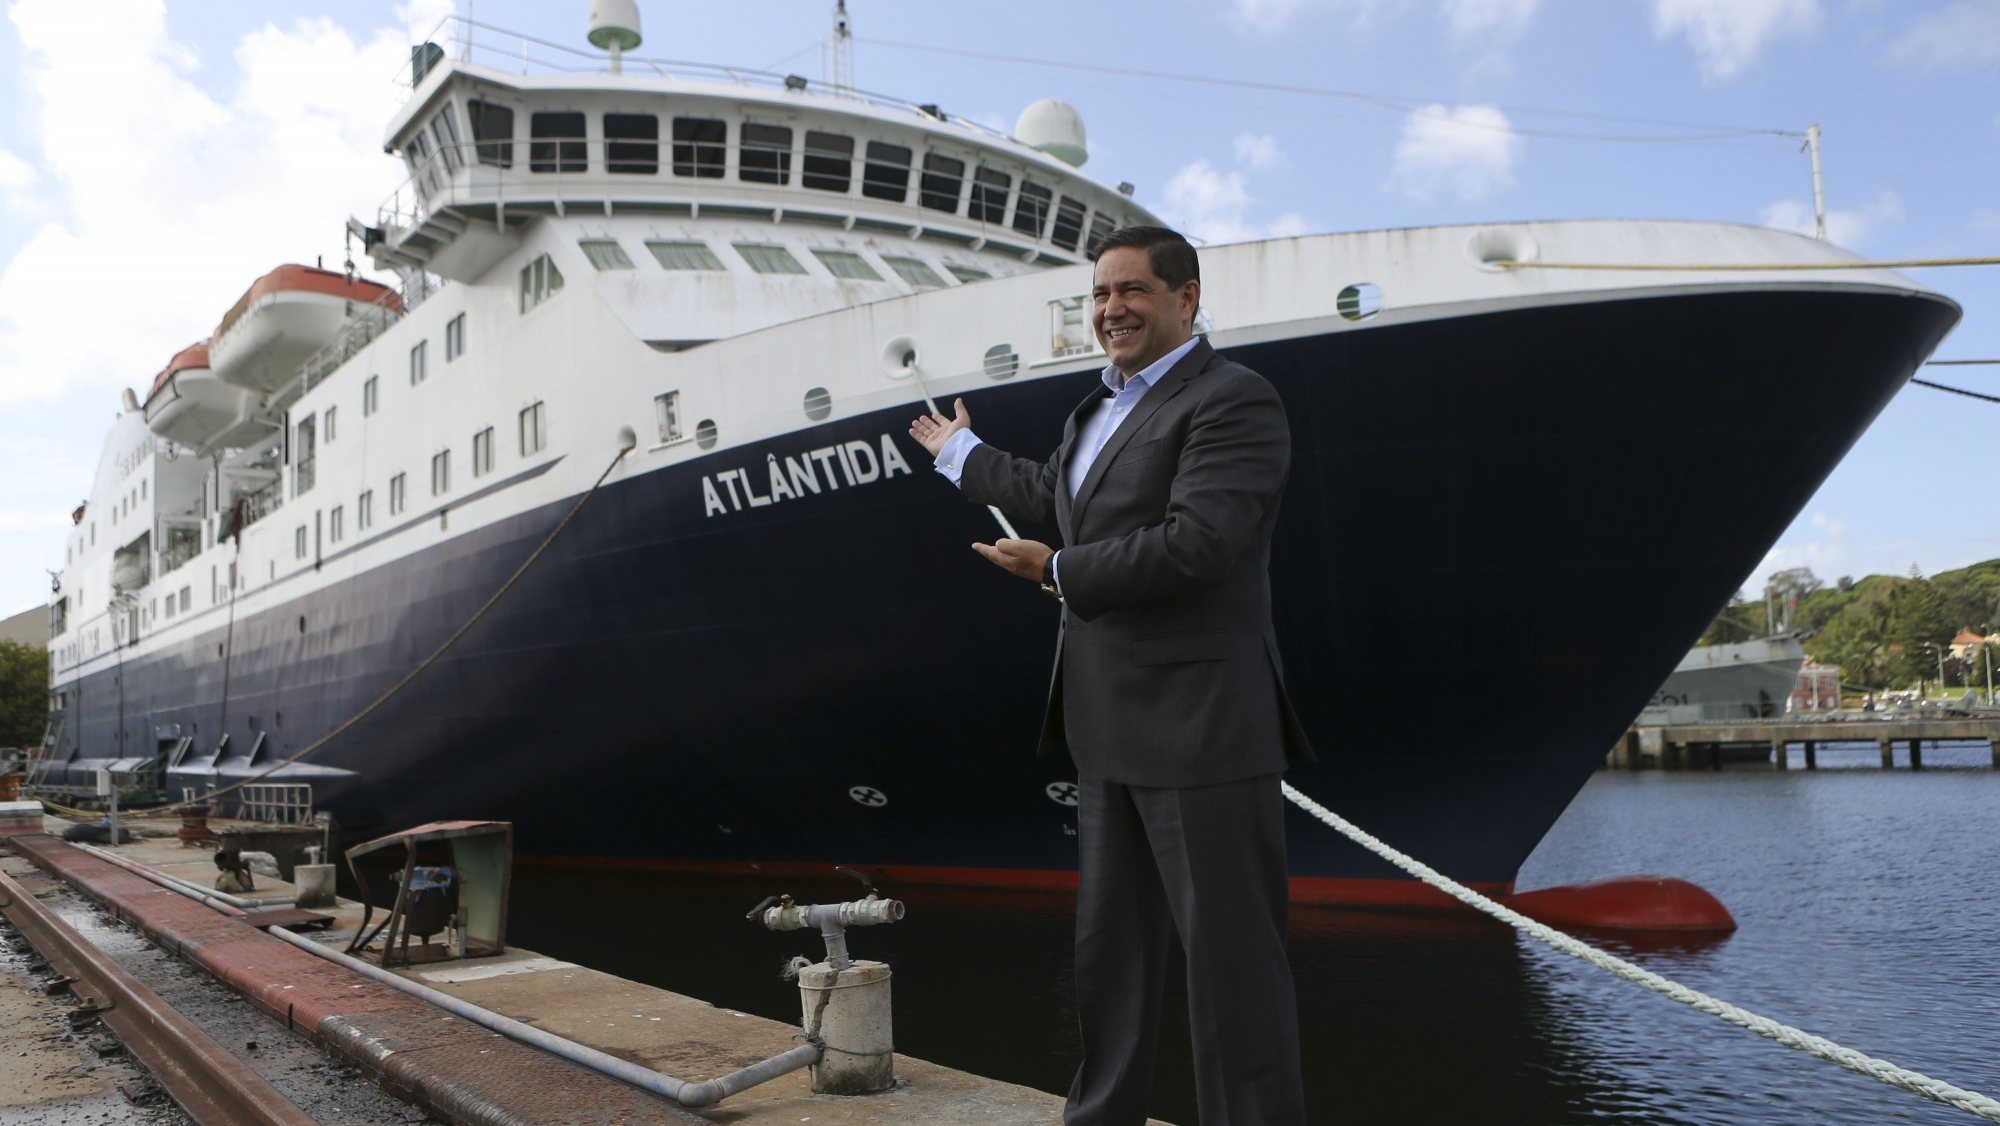 o navio acabou por ser adquirido pela segunda melhor proposta, que foi apresentada pela Douro Azul, de Mário Ferreira, no valor de 8 milhões e 750 mil euros